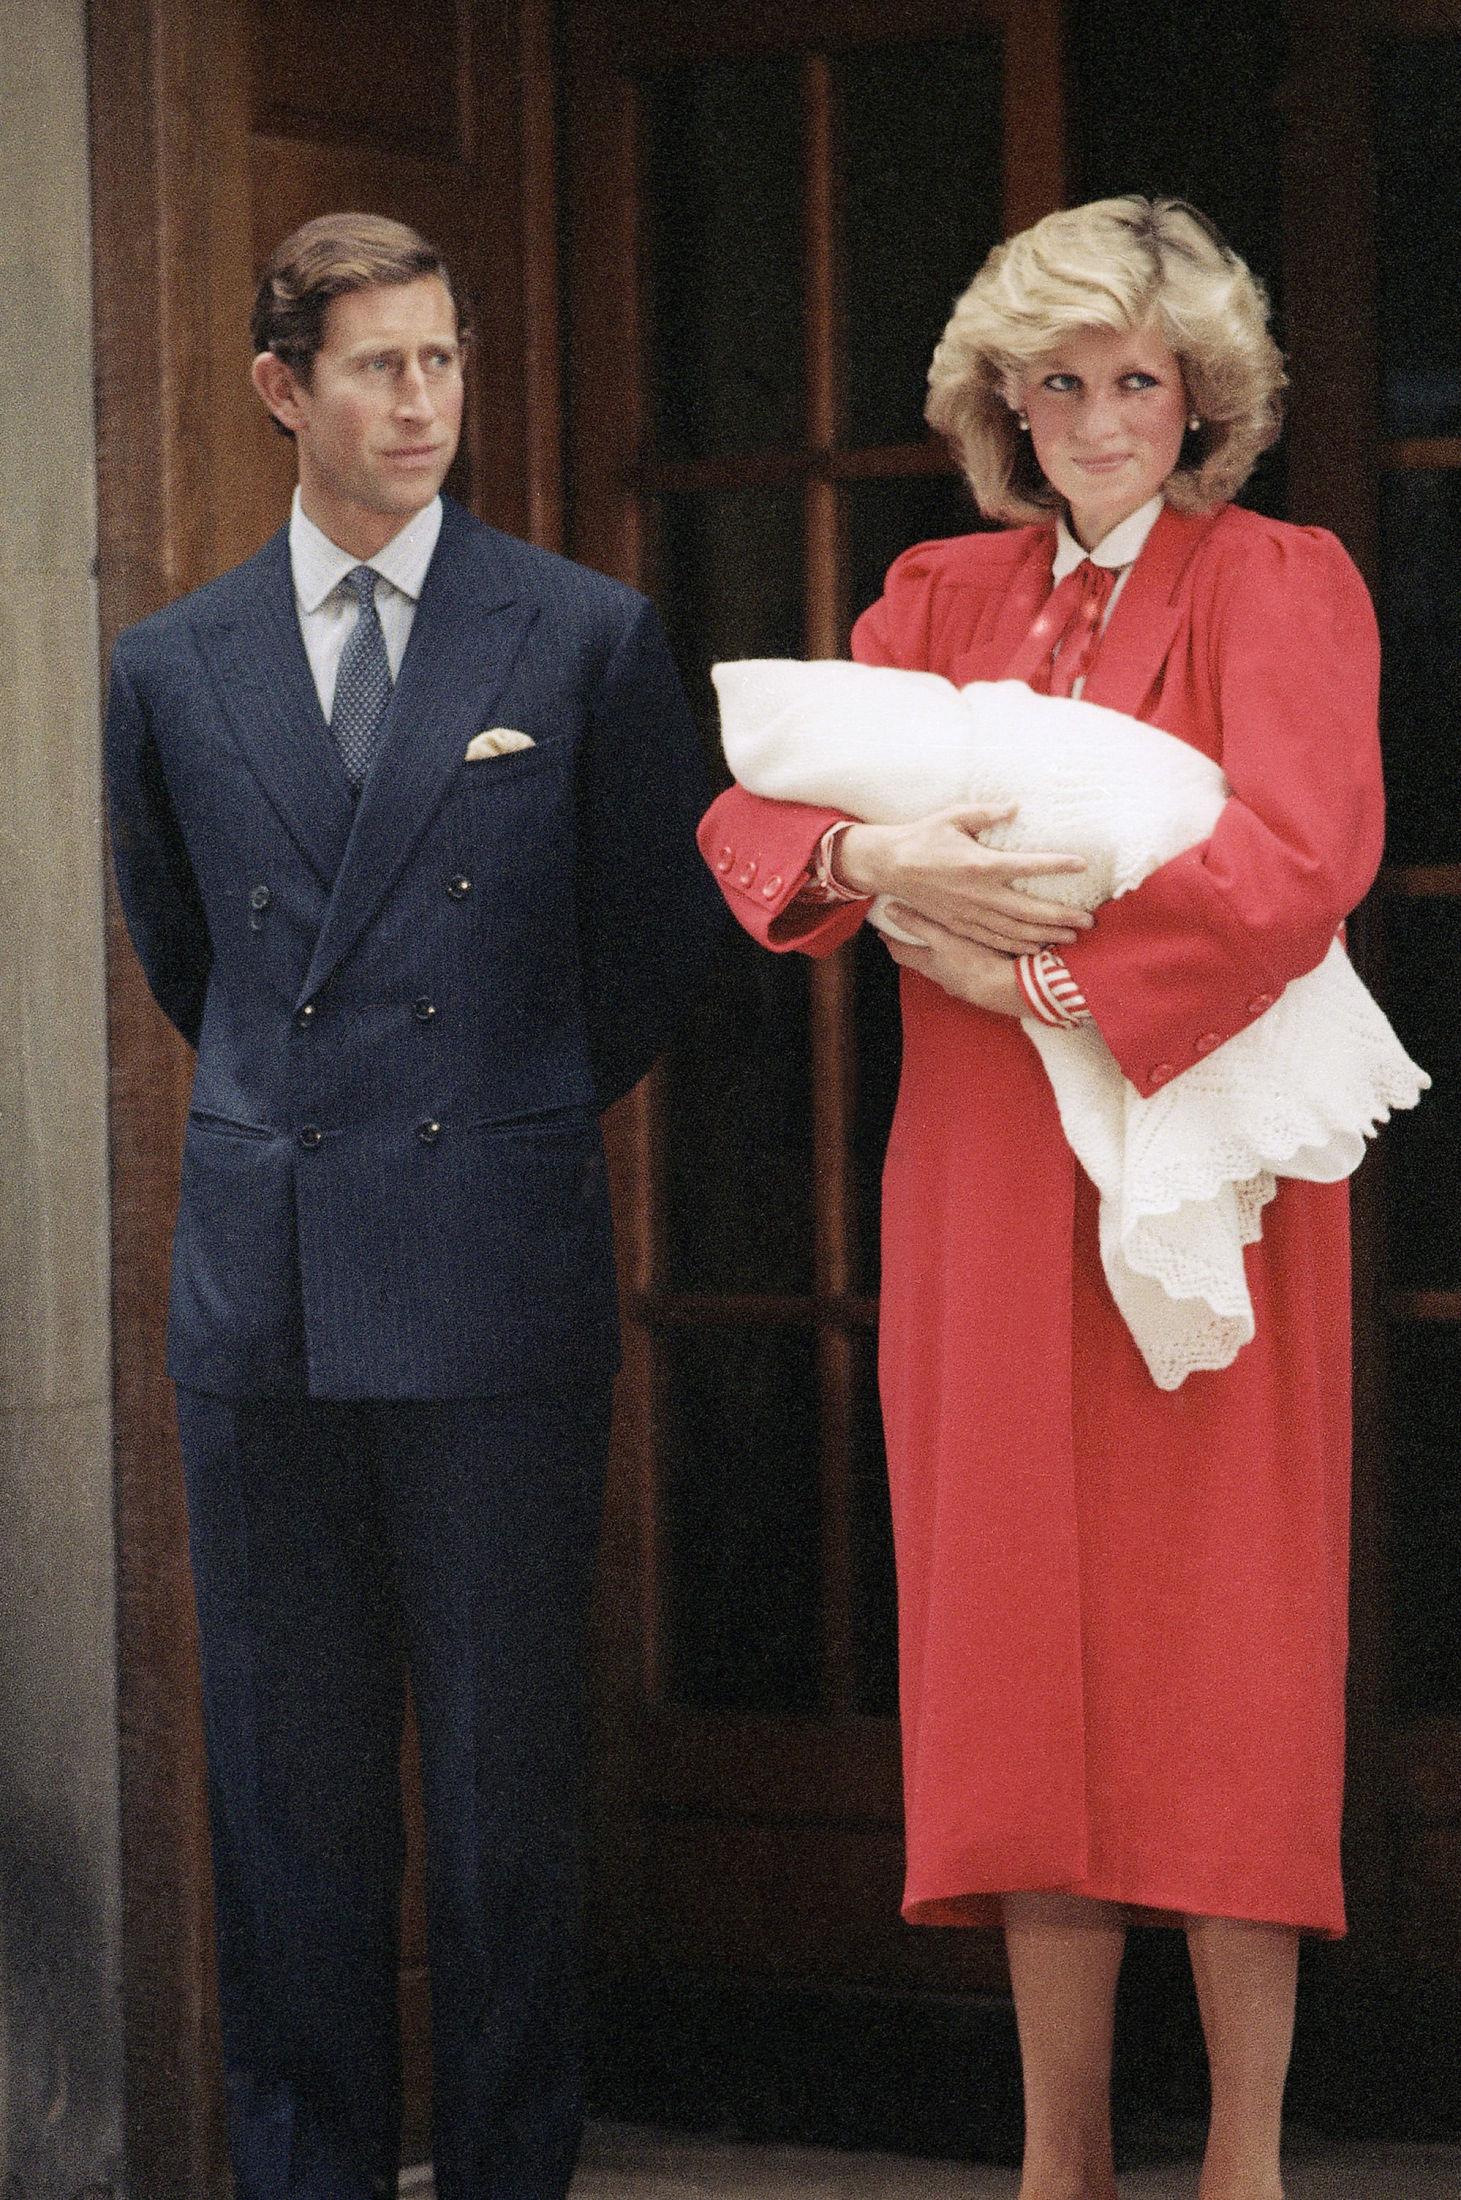 HARRY KOM TIL VERDEN: Prinsesse Diana og Prins Charles viste fram lille Harry på sykehustrappene. Diana hadde på seg en rød kjole med hvit skjorte under. Foto: AP